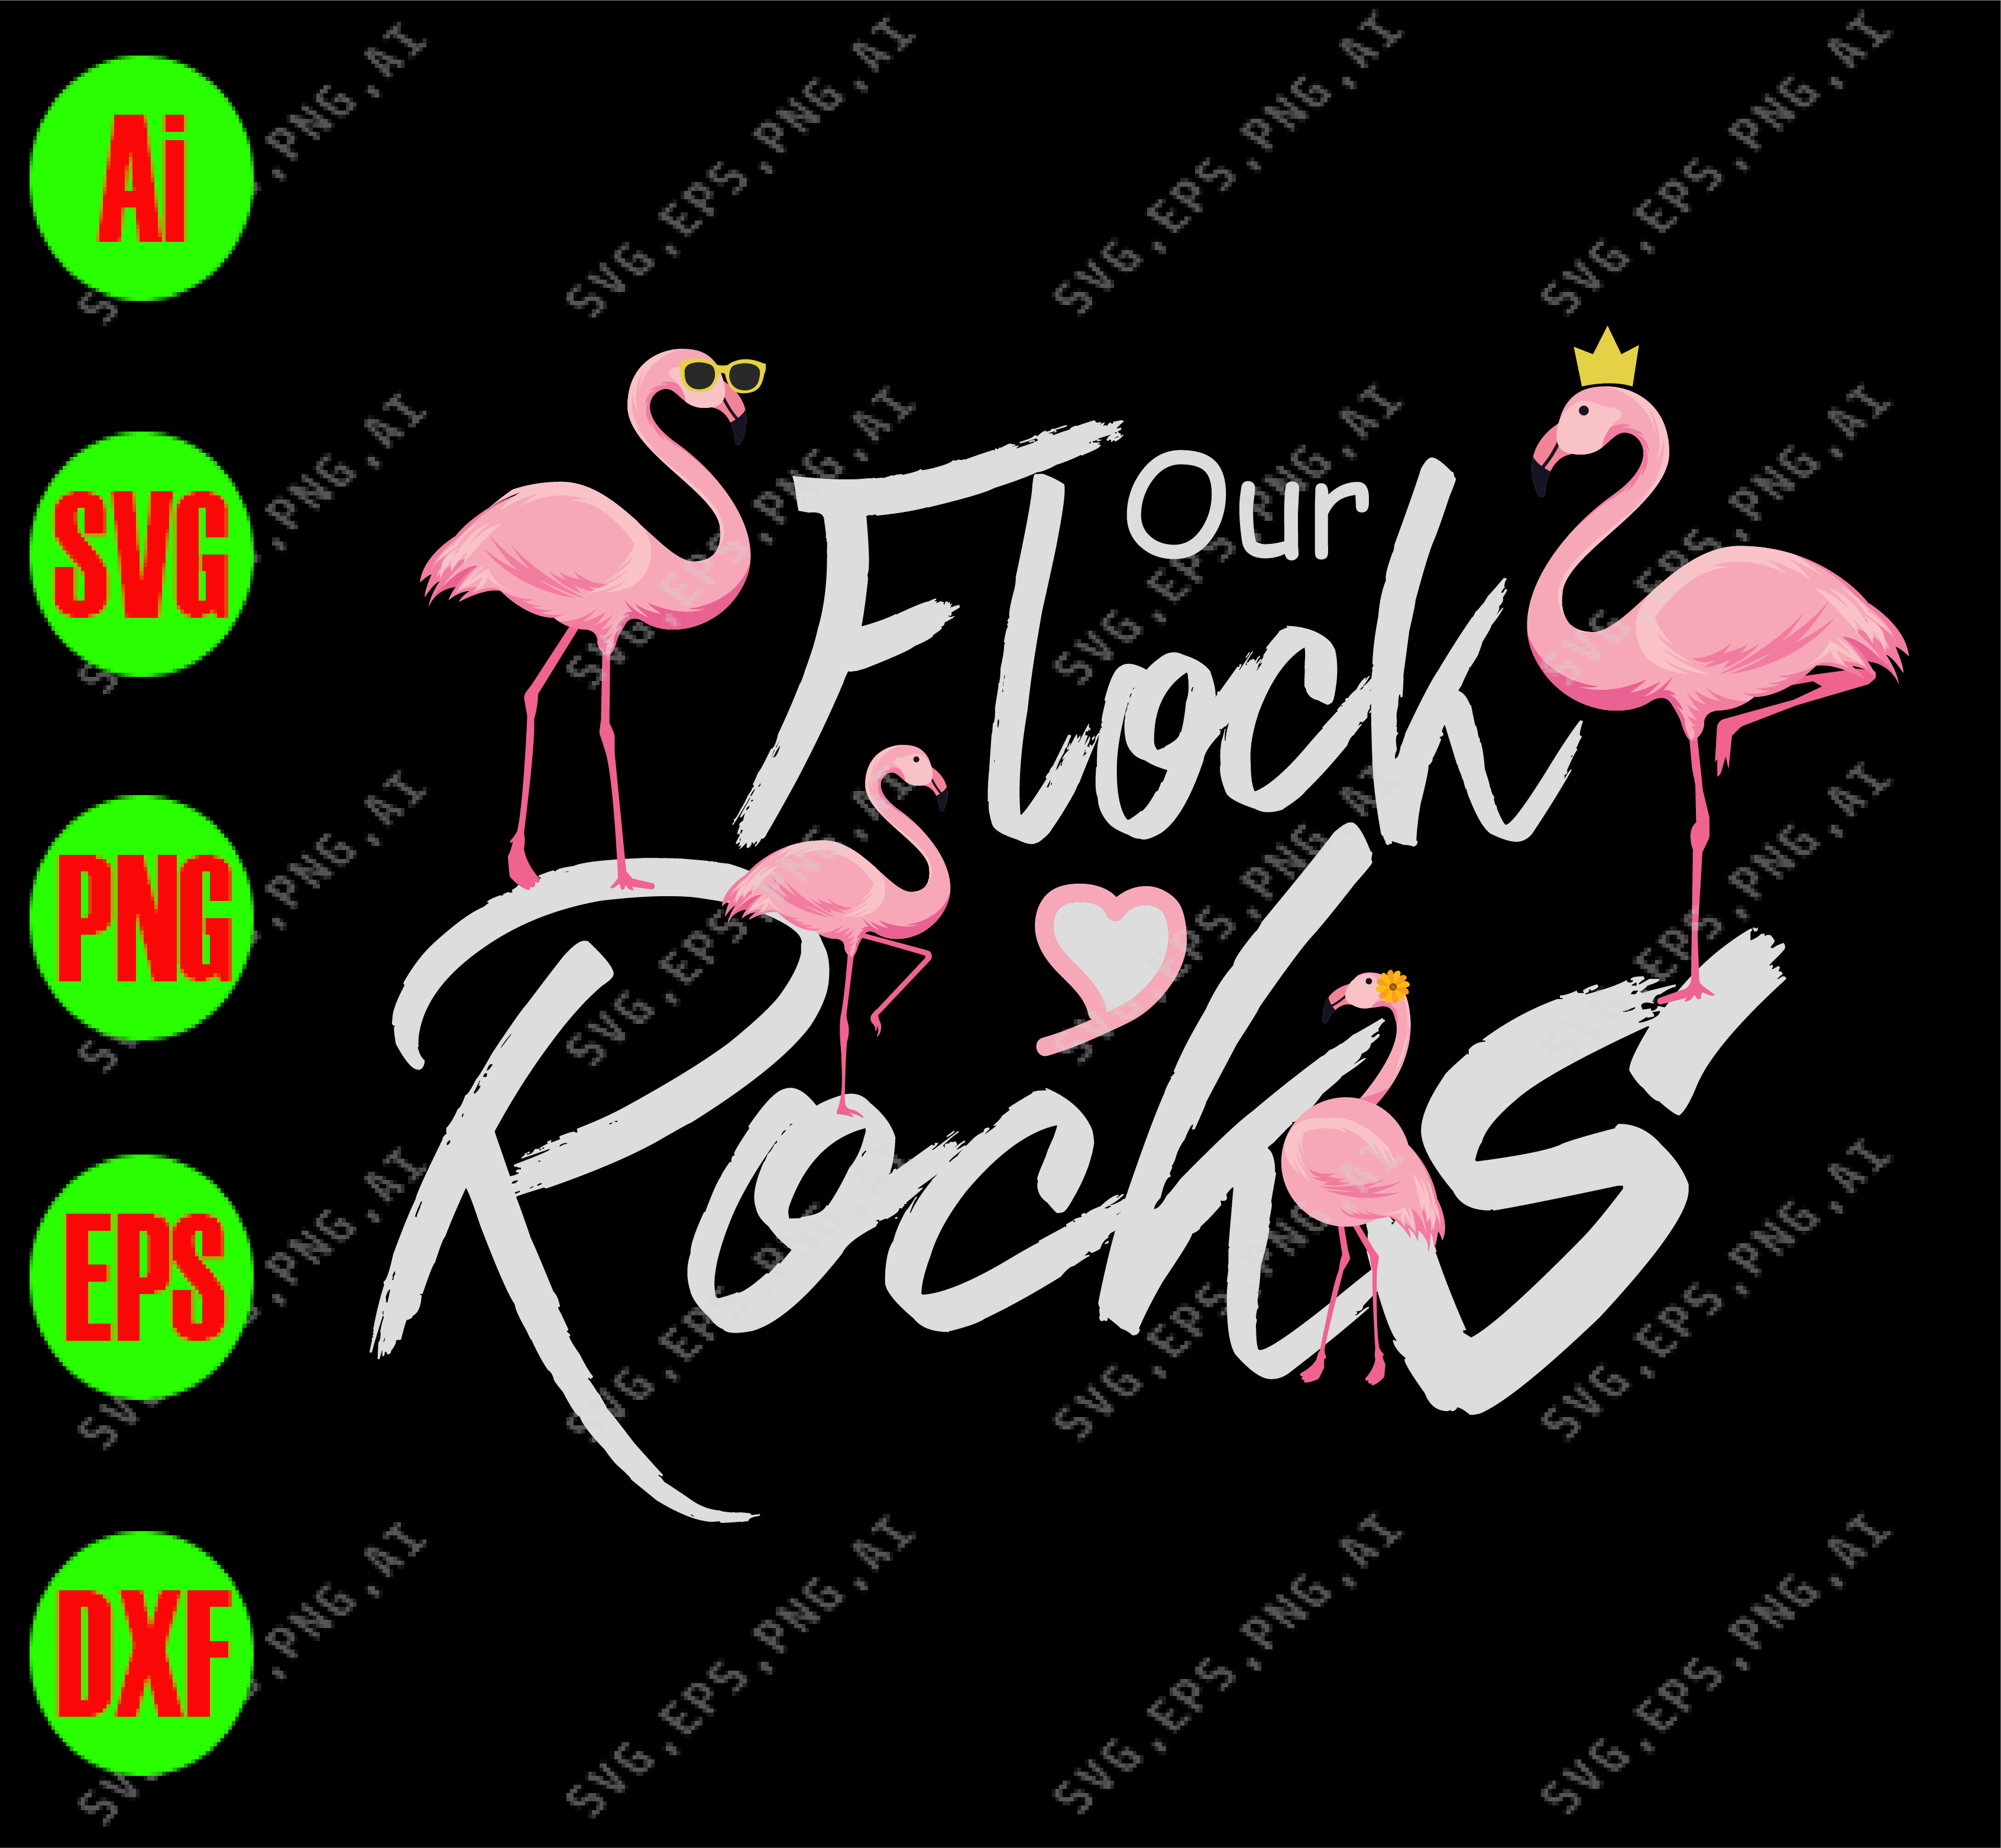 Our Flock Rocks Svg Dxf Eps Png Digital Download Designbtf Com,Strawberry Wine Lyrics